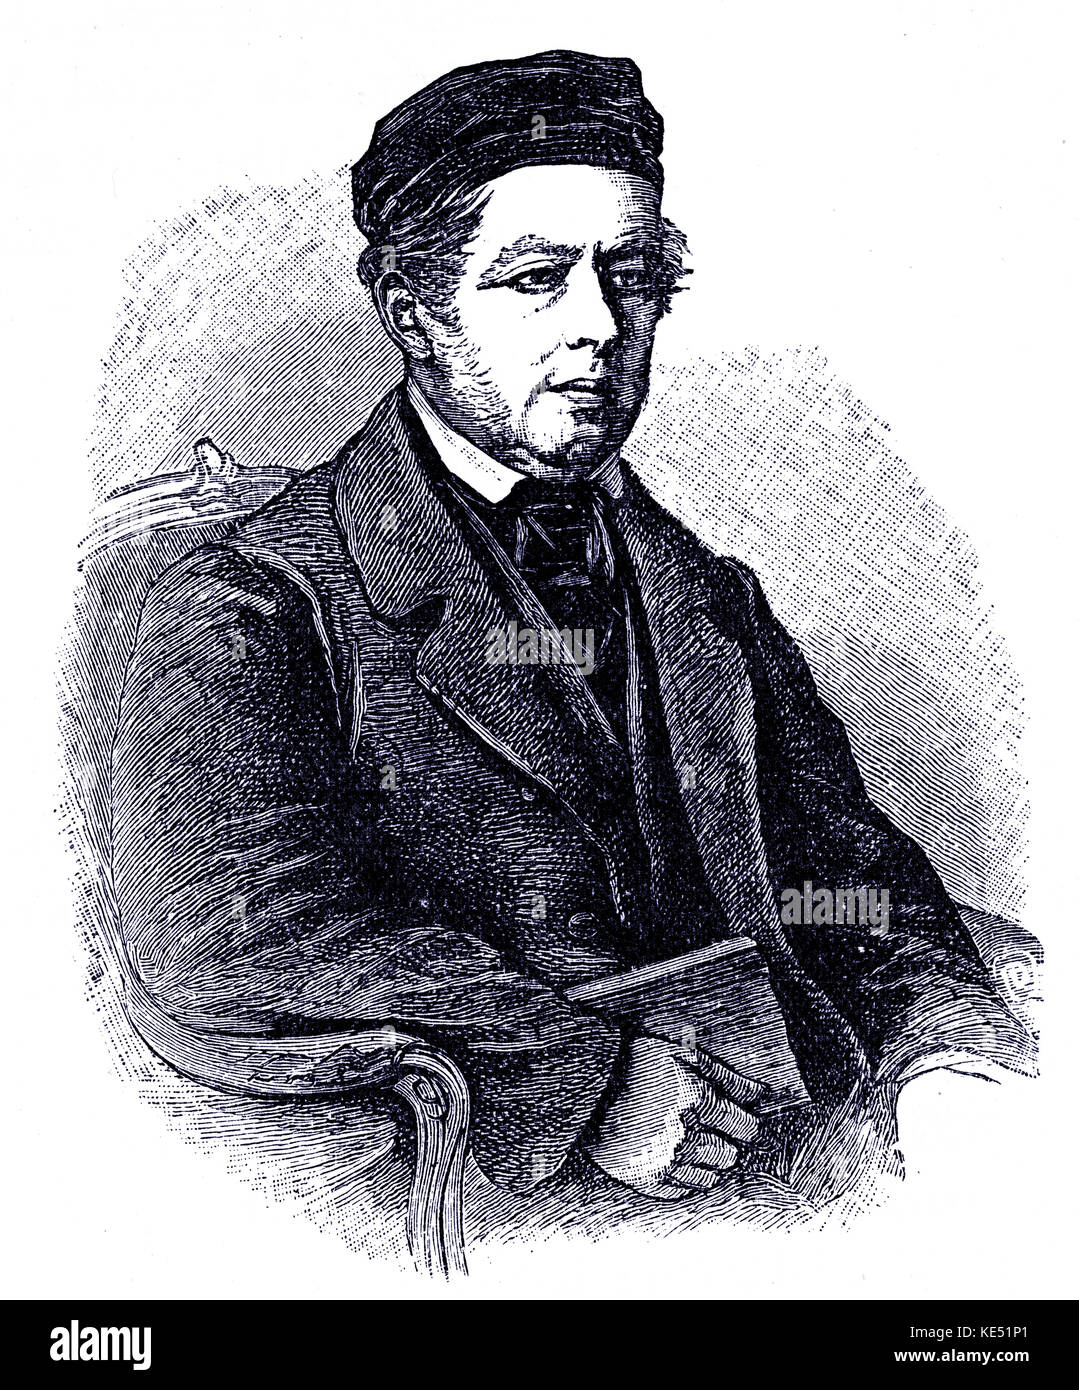 Moritz Hauptmann - portrait de l'écrivain et compositeur allemand. 13 octobre 1792 - 3 janvier 1868. Banque D'Images